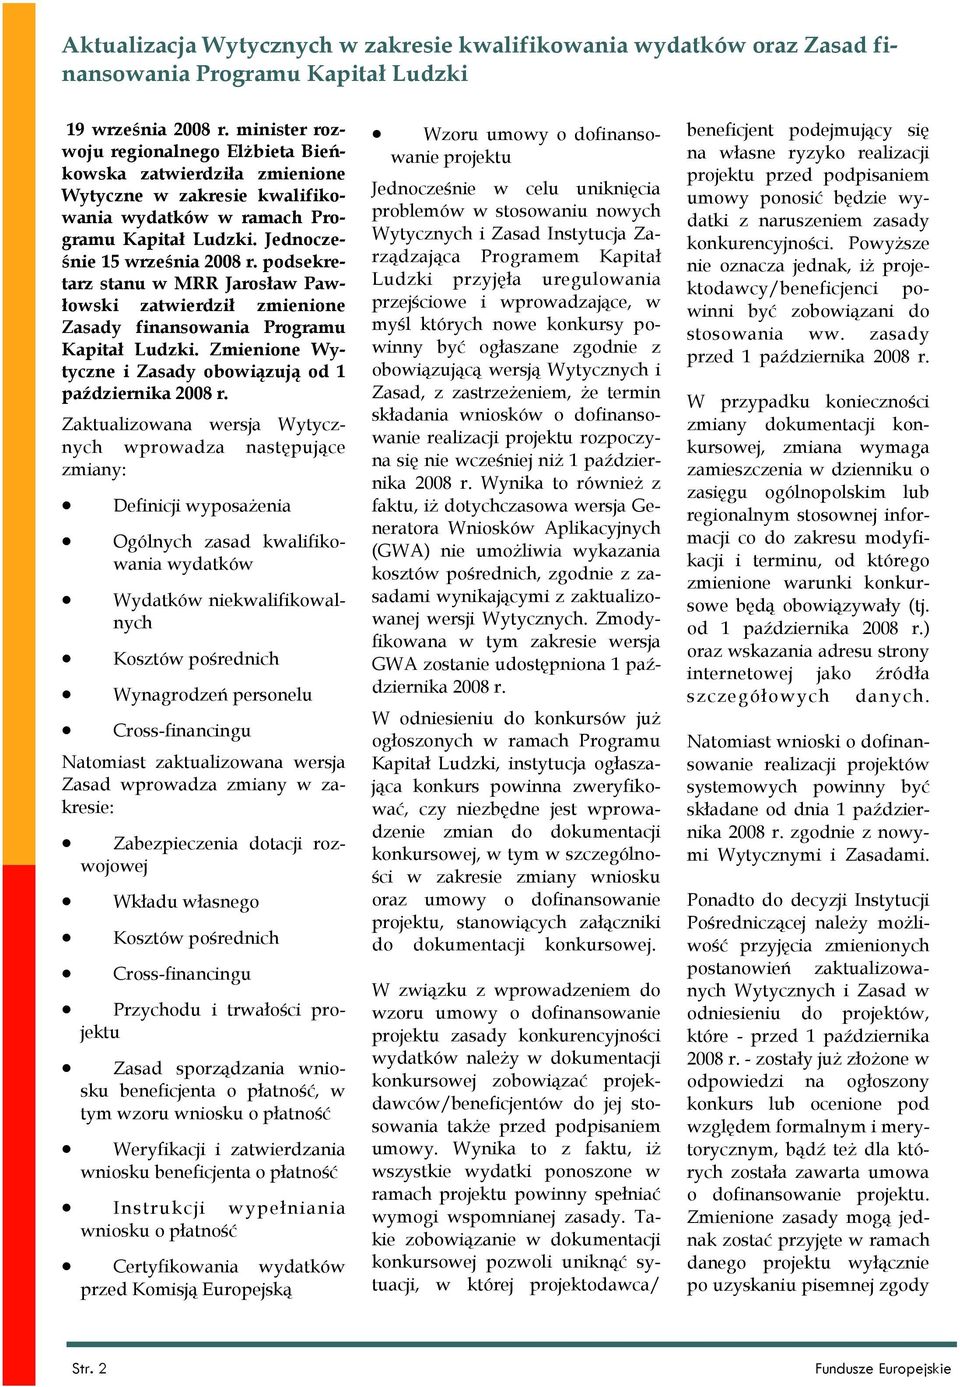 podsekretarz stanu w MRR Jarosław Pawłowski zatwierdził zmienione Zasady finansowania Programu Kapitał Ludzki. Zmienione Wytyczne i Zasady obowiązują od 1 października 2008 r.